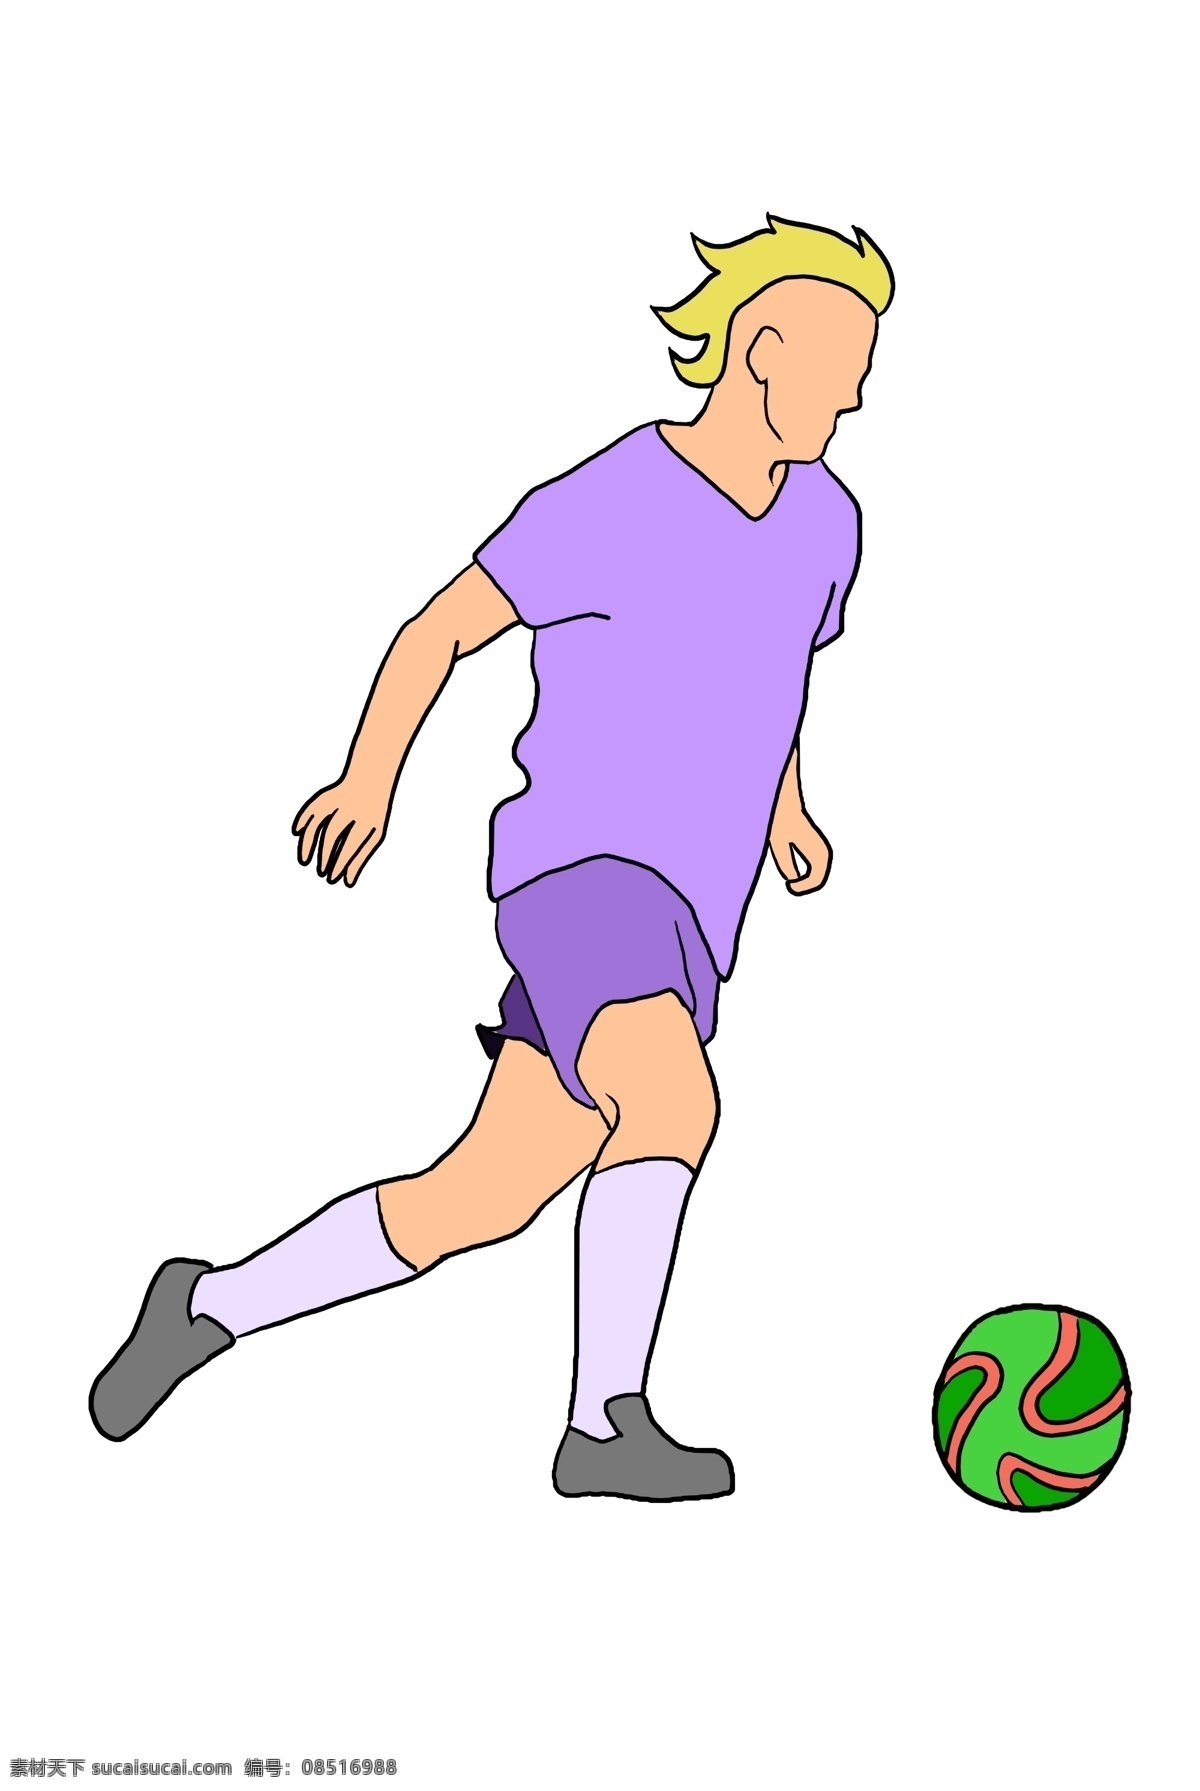 足球 健身 小 男孩 足球健身 户外健身 户外运动 踢 黄色的头发 健身的小男孩 卡通人物